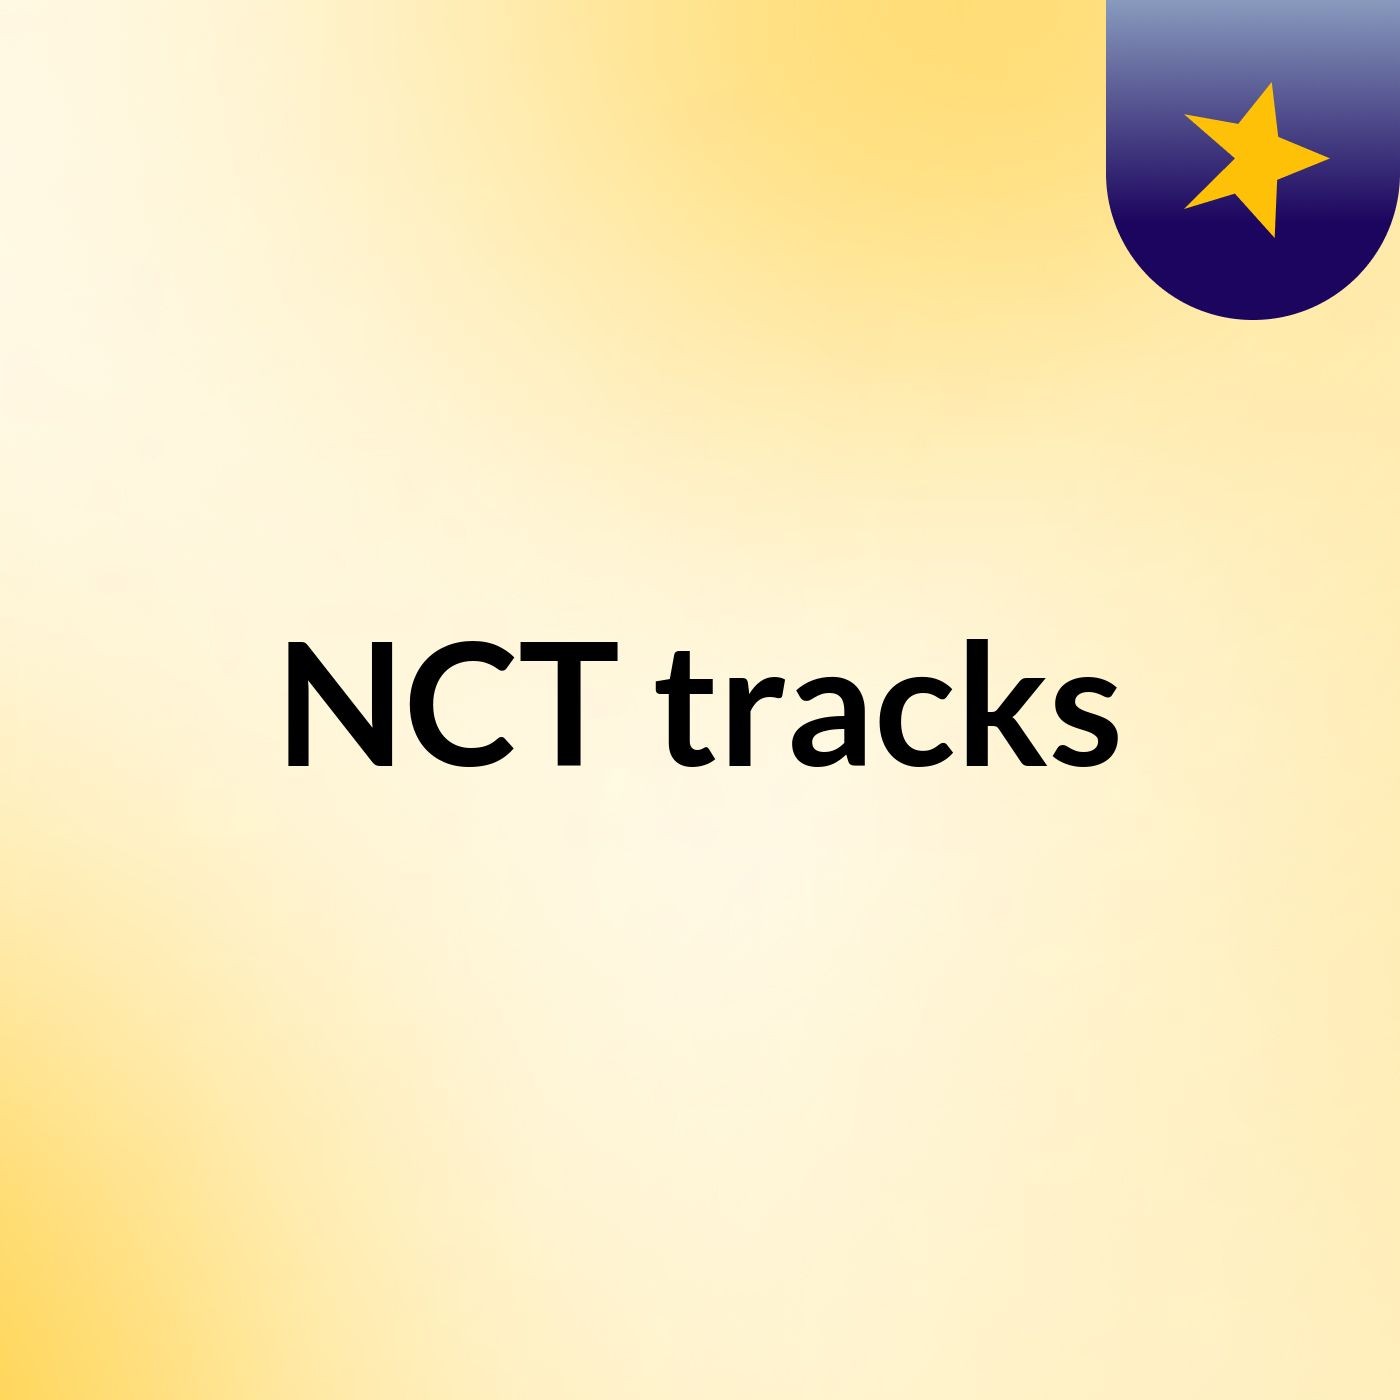 NCT tracks